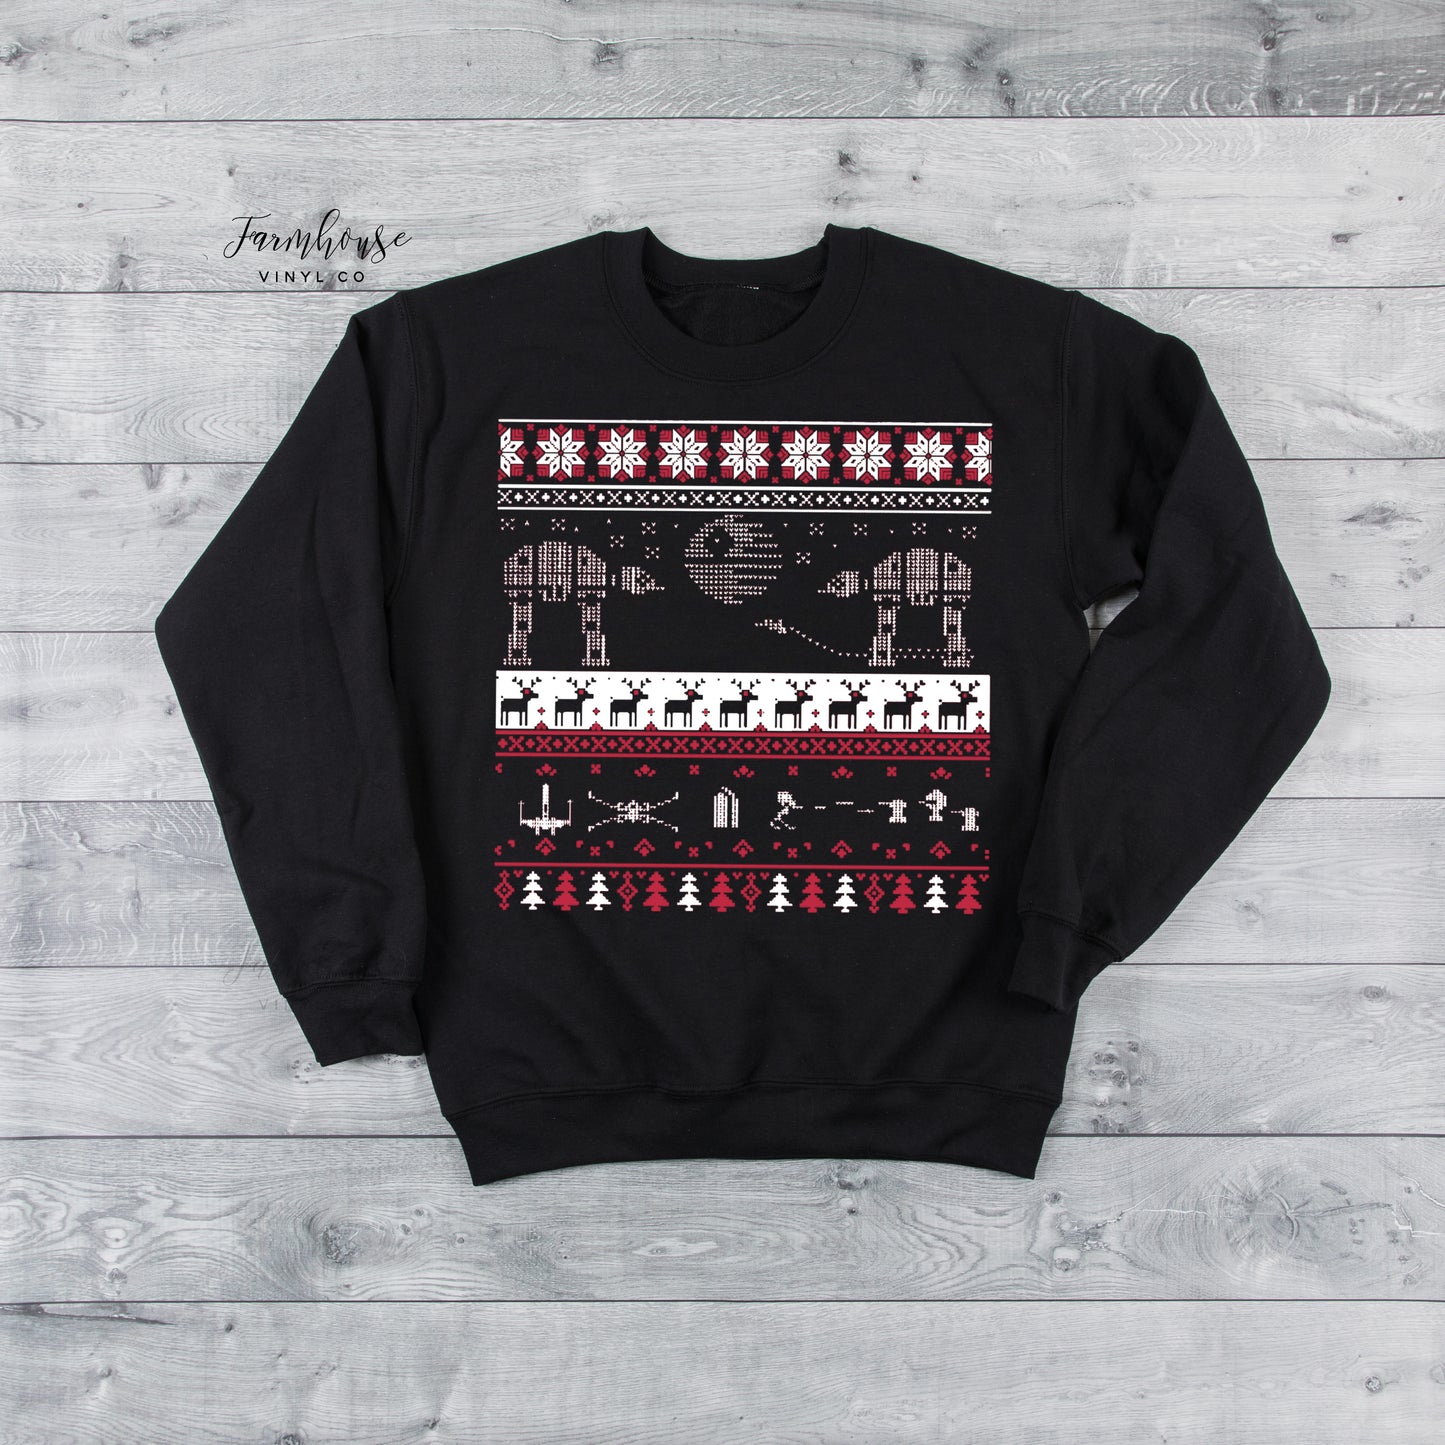 Star Wars Ugly Christmas Sweatshirt